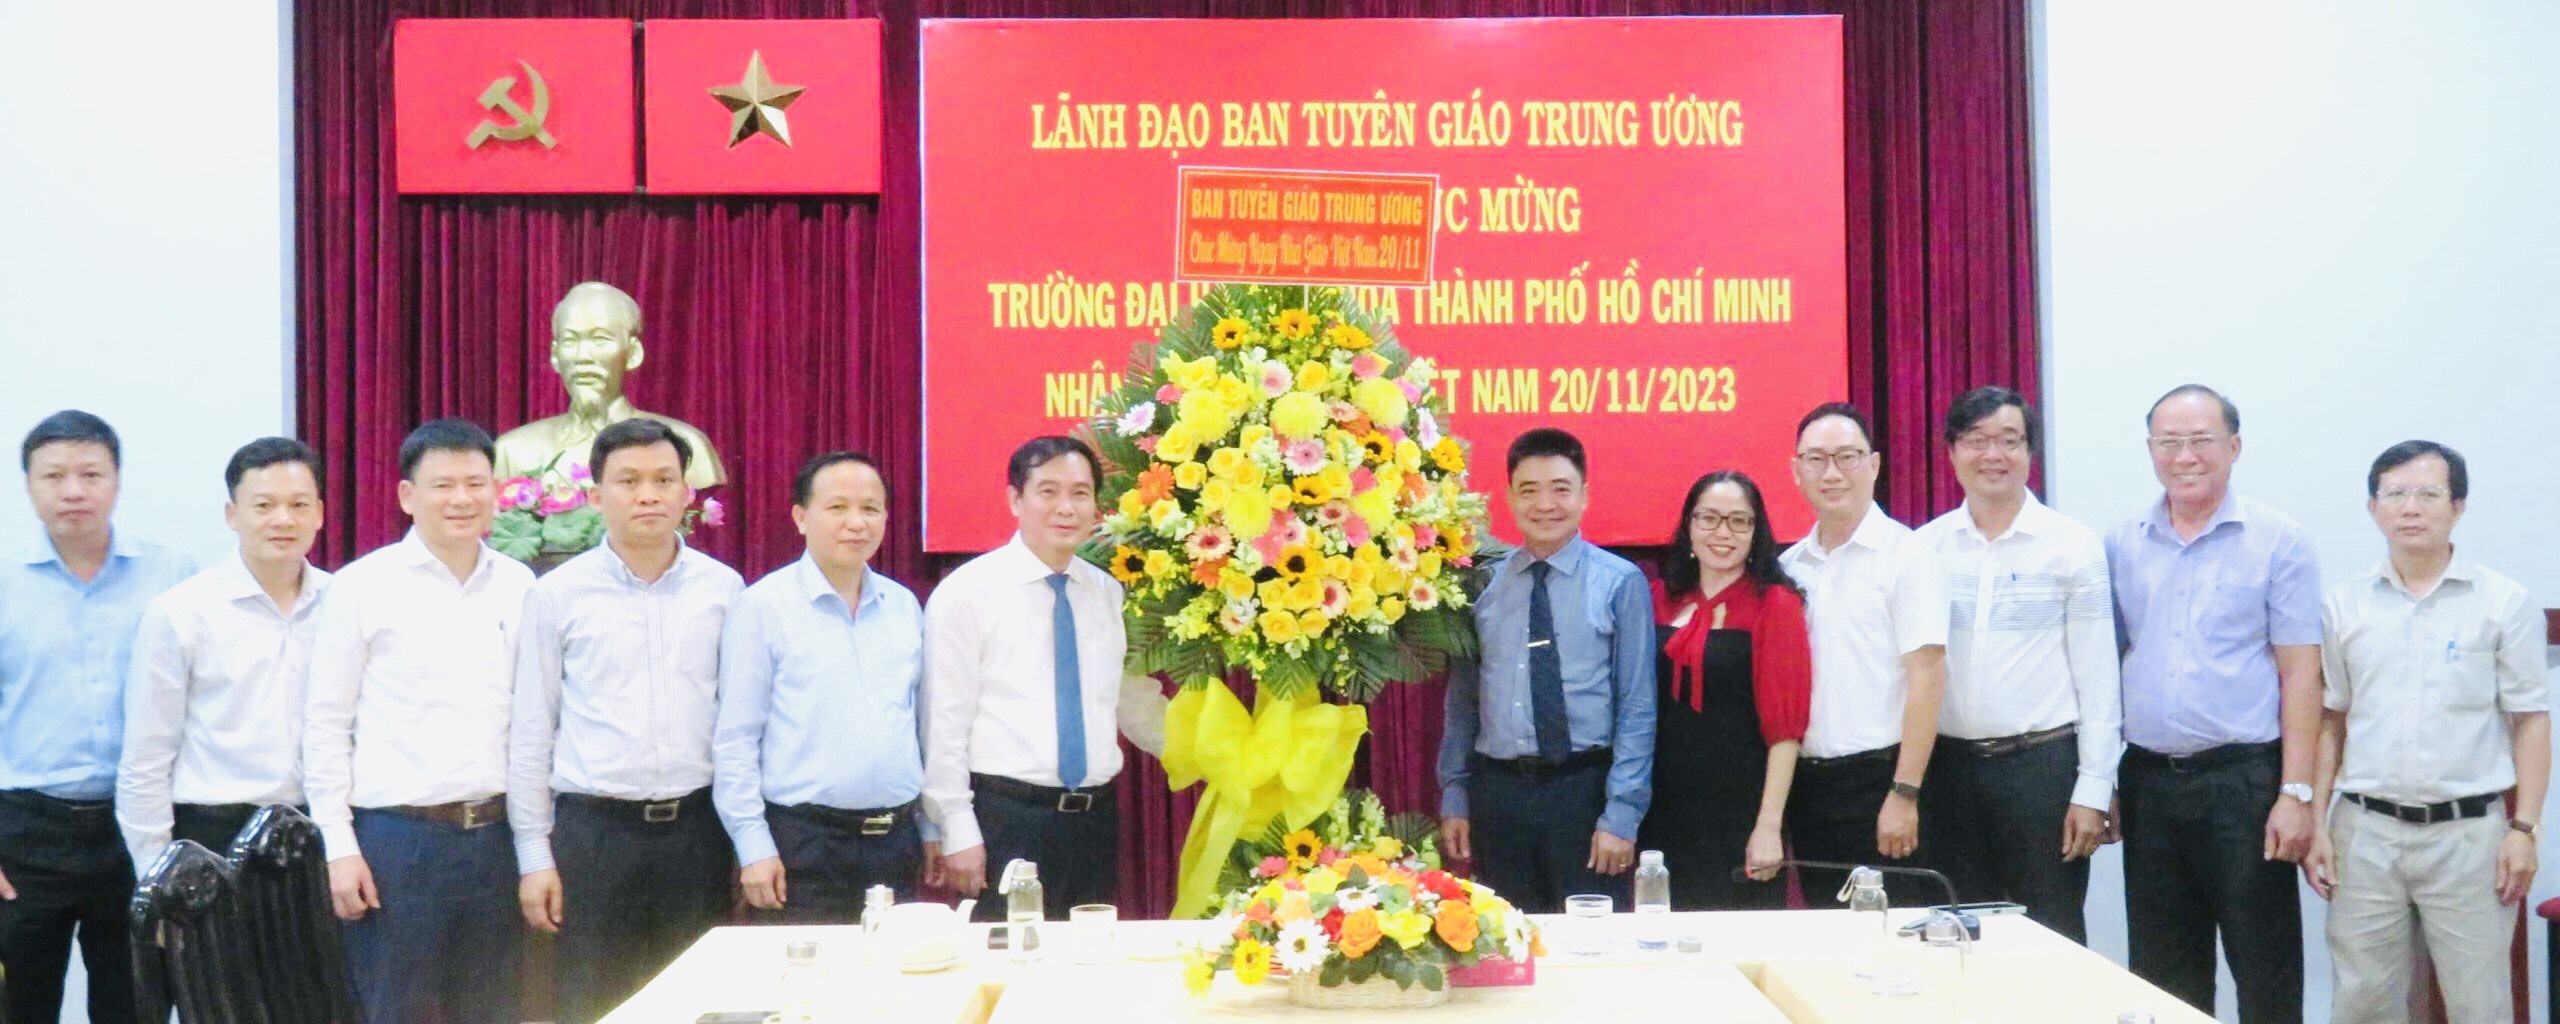 Đoàn công tác của Ban Tuyên giáo Trung ương thăm và chúc mừng 365bet de
. Hồ Chí Minh nhân dịp kỷ niệm 41 năm Ngày Nhà giáo Việt Nam 20/11